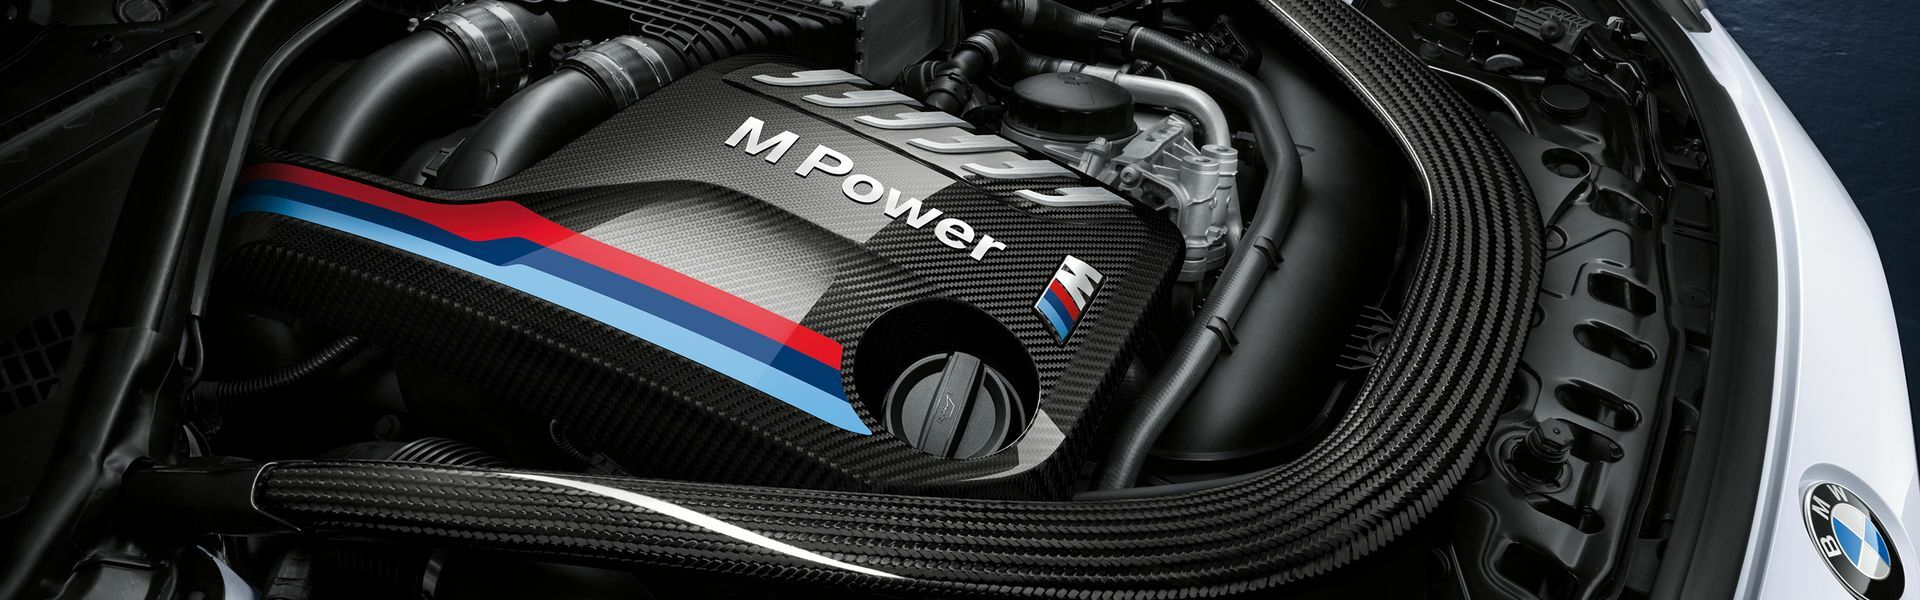 Zvýšení výkonu/ Softwarové úpravy/ Drobné performance díly pro automobil Porsche Panamera Turbo / Sport Turismo 971